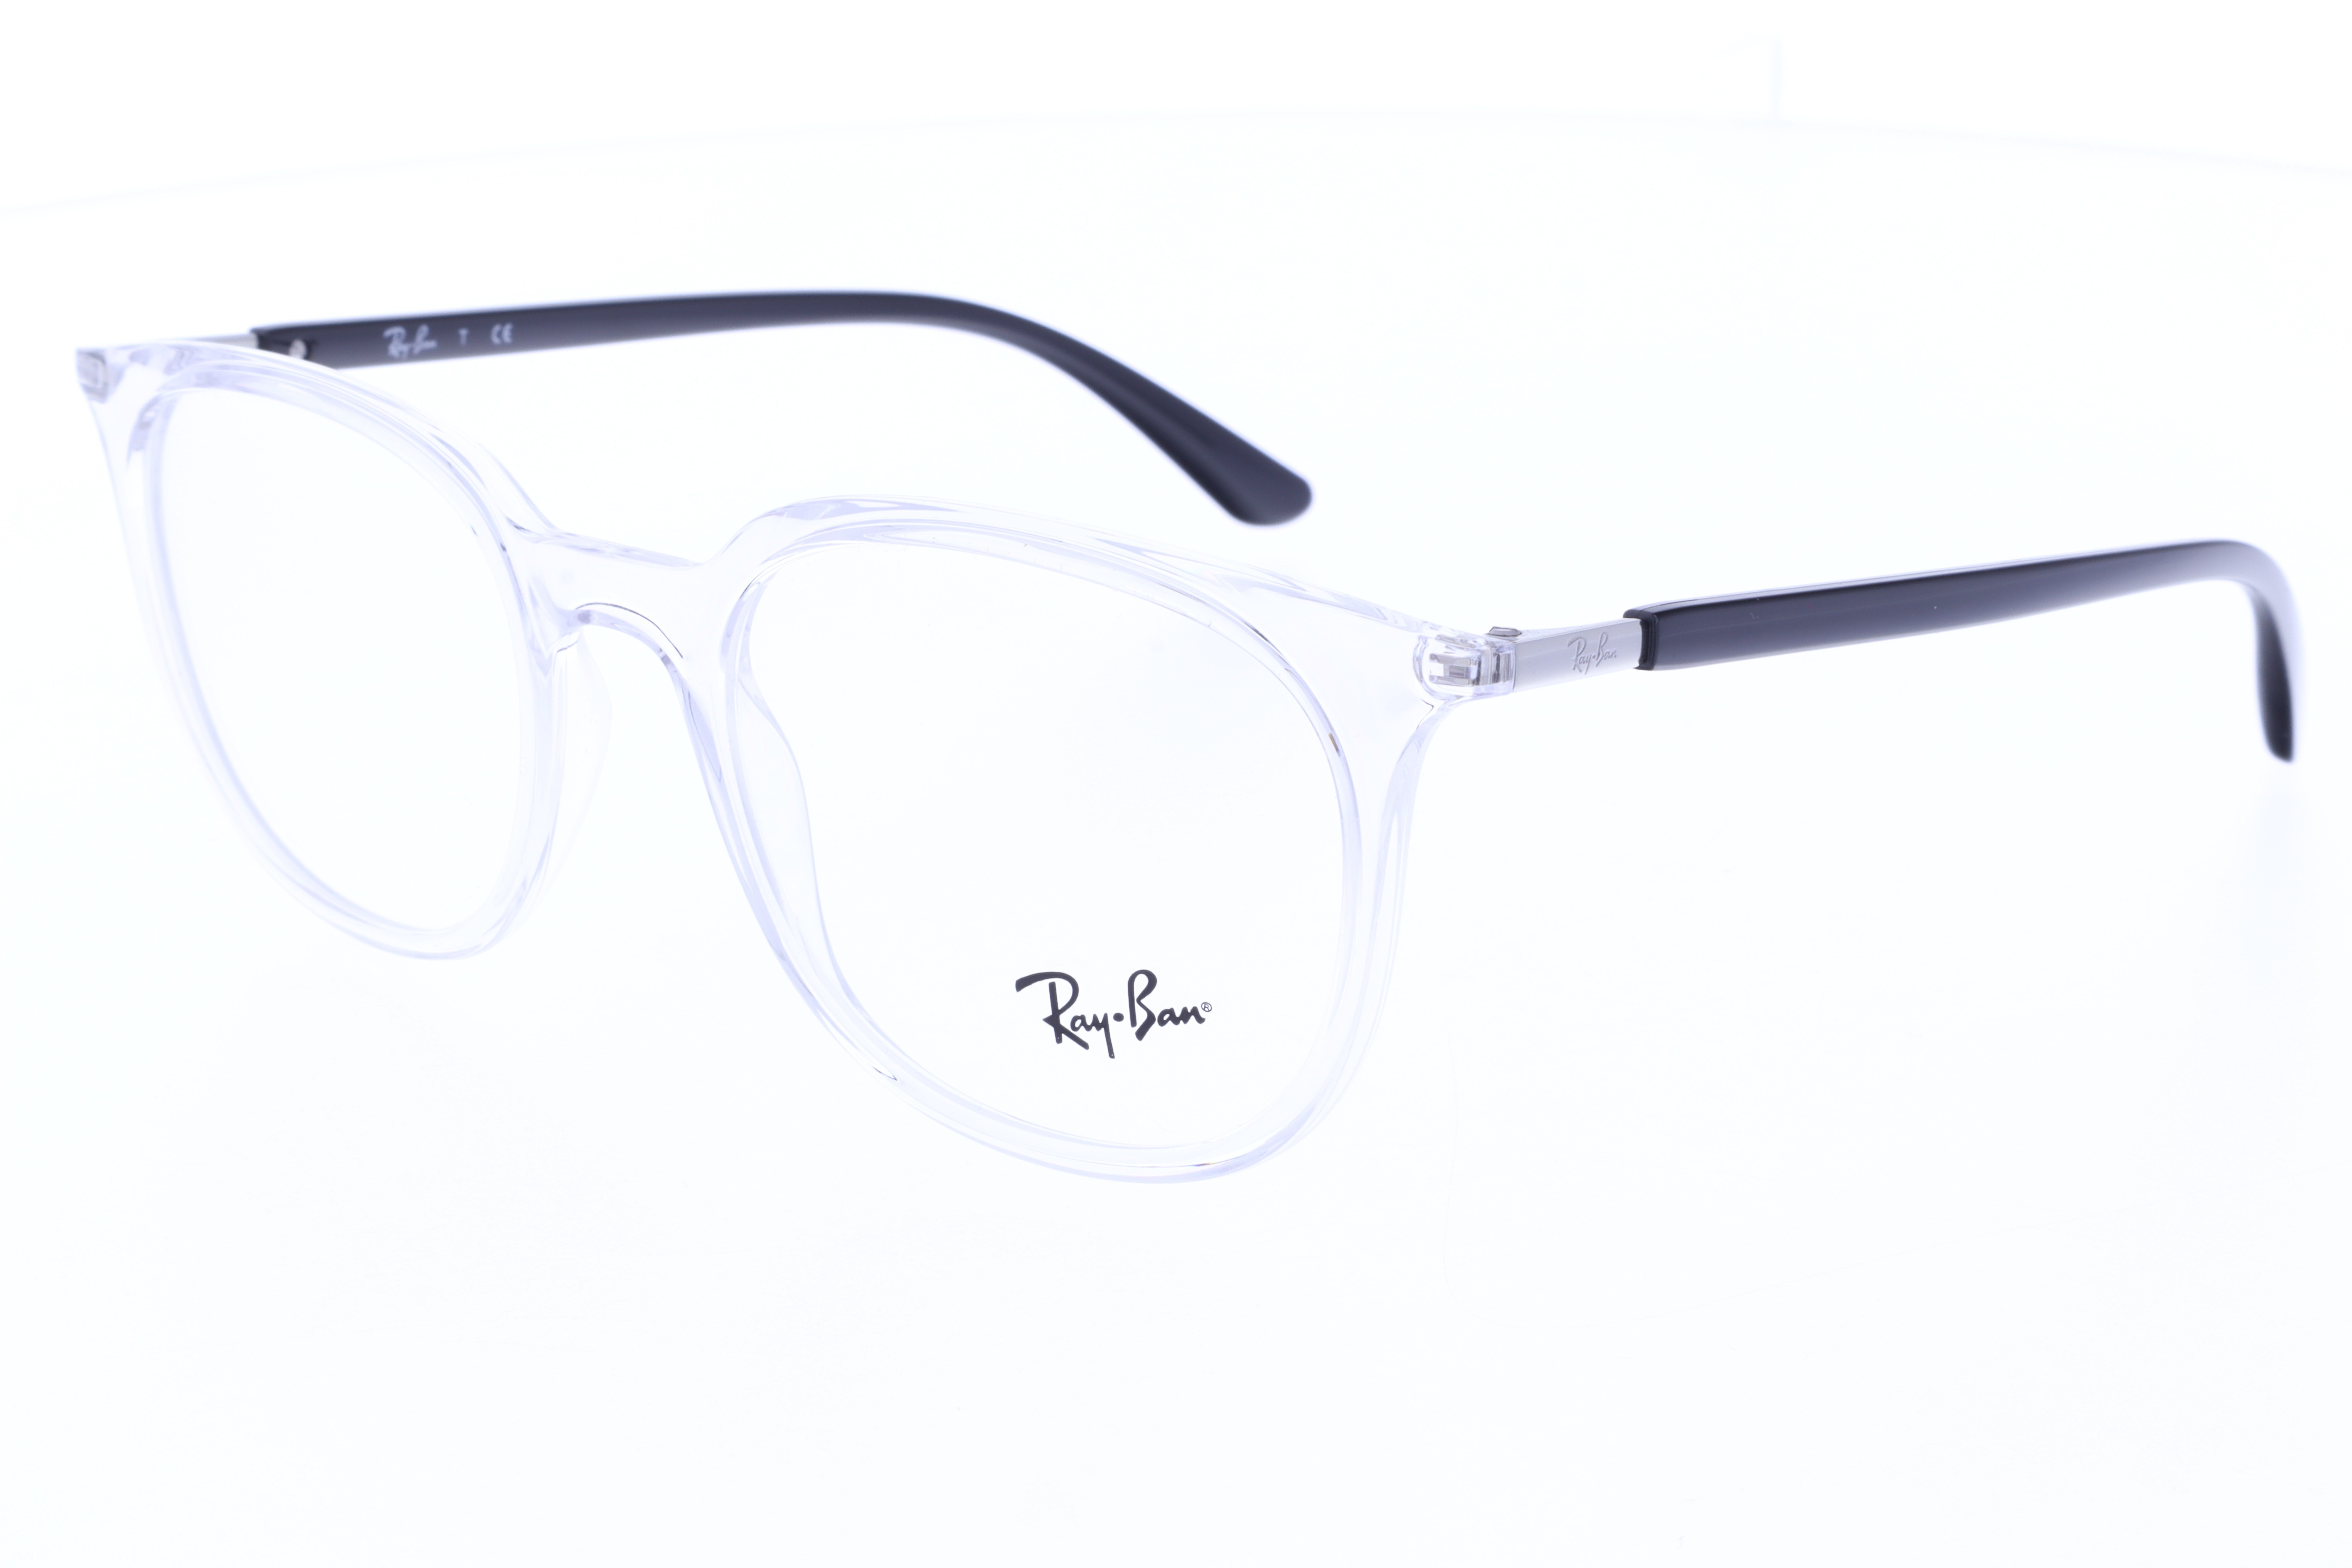 Ray-Ban szemüveg - RB 7190 5943 51-19-140